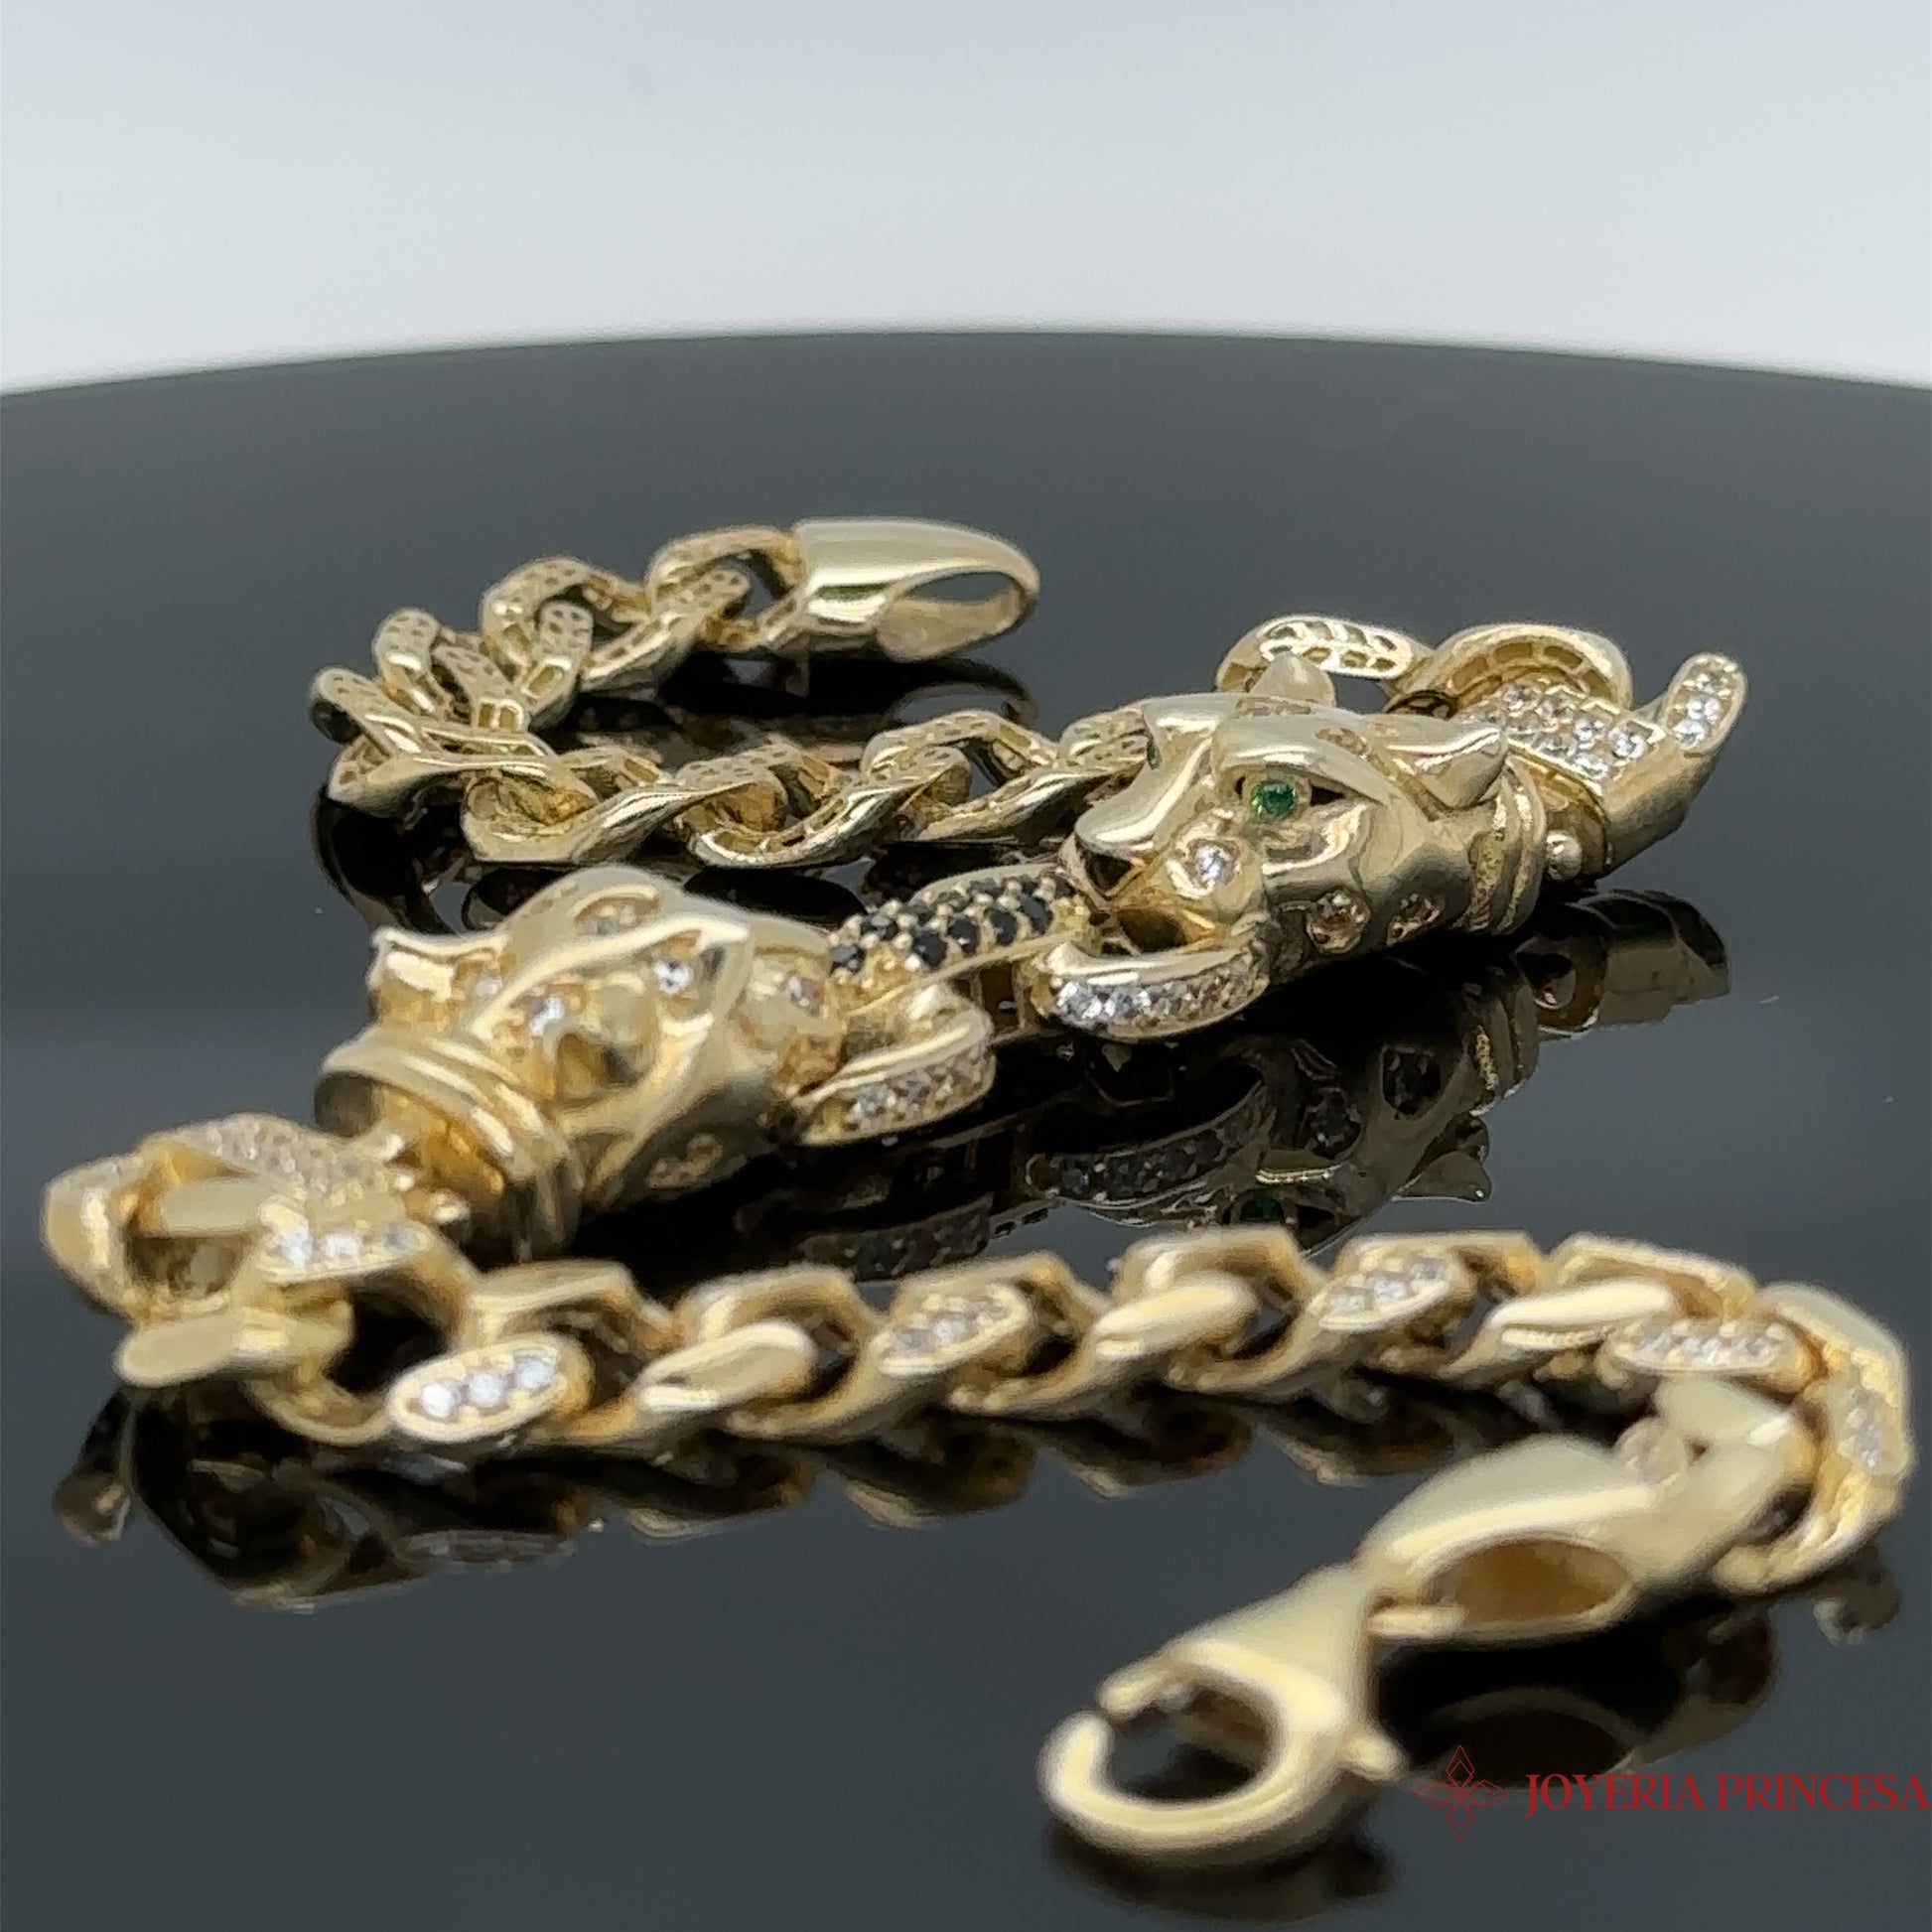 Sailing Jewelry Bracelets & Bangles Snake Shape Bangle Cz Leopard Head  Bangle - Buy Bracelets & Bangles,Snake Shape Bangle,Cz Leopard Head Bangle